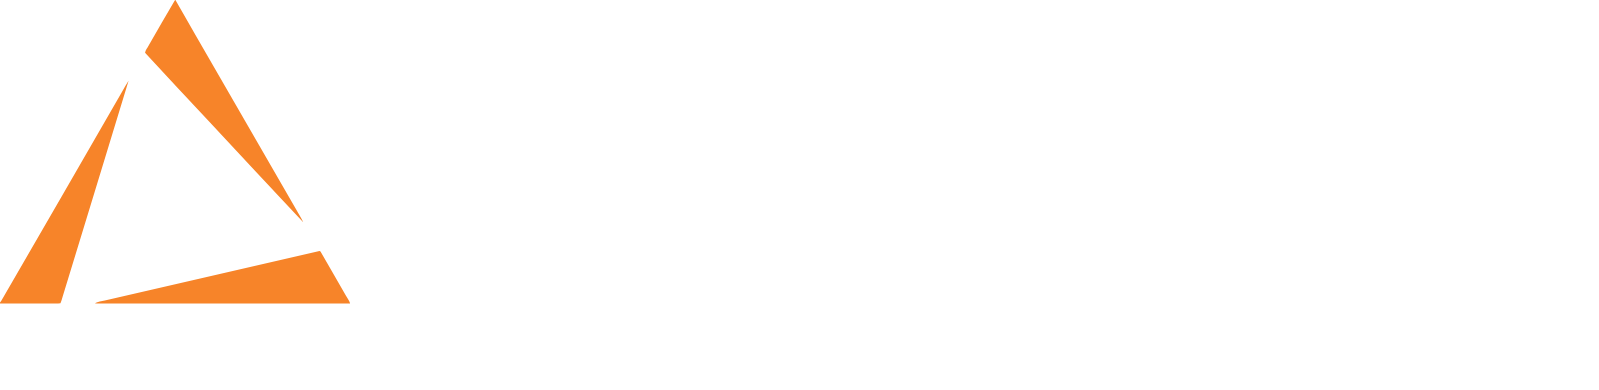 Capstone Infrastructure logo grand pour les fonds sombres (PNG transparent)